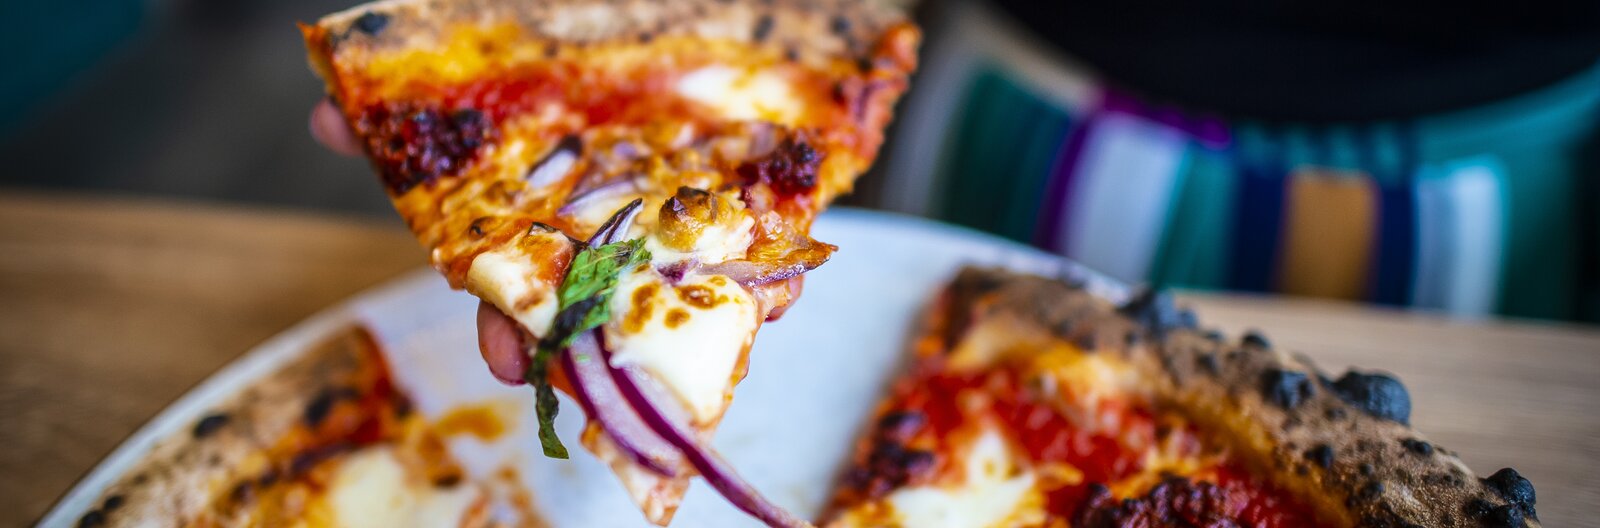 Pizza, pasta pronto! – Innen rendeld a legjobb pizzát, tésztát és olasz kaját, ha Itáliára éhezel!